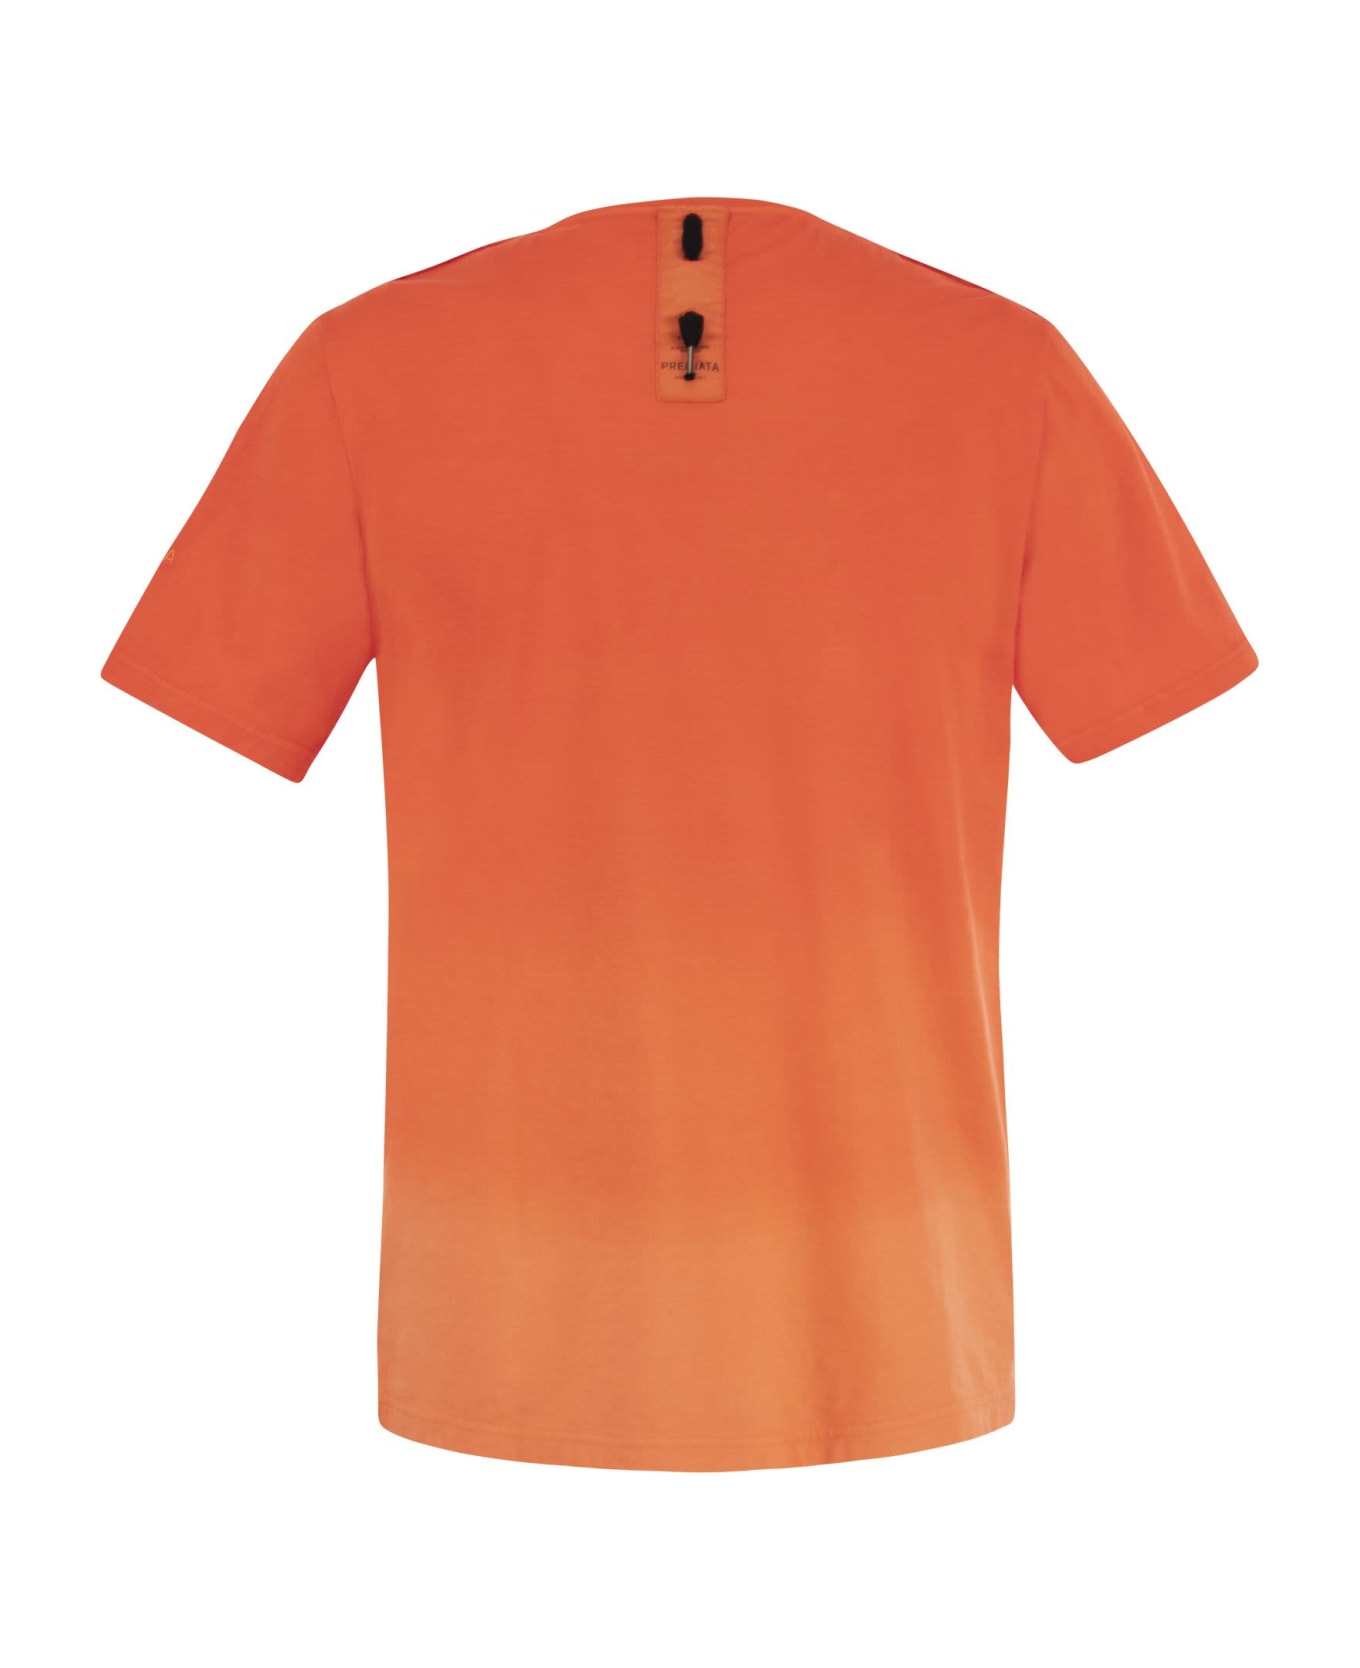 Premiata Cotton T-shirt With Logo - Orange